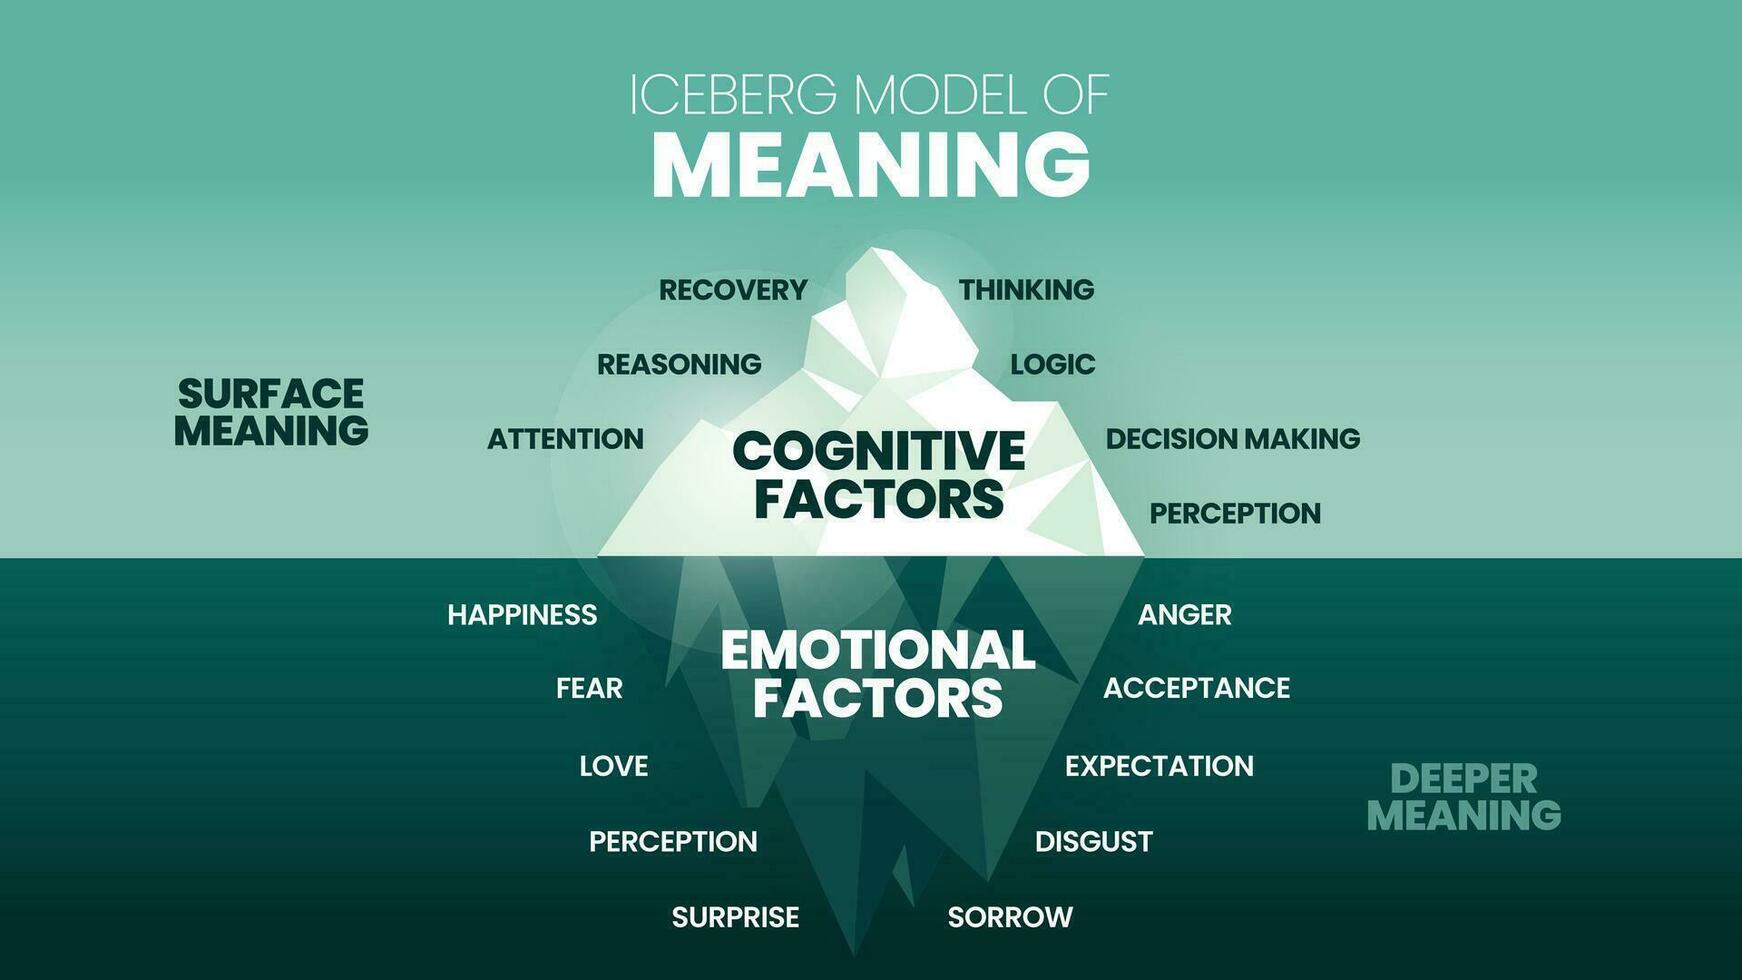 le iceberg modèle de sens caché iceberg infographie modèle bannière, surface est cognitif les facteurs avoir récupération, pensée, logique, etc. Plus profond est émotif les facteurs avoir perception, l'amour etc. vecteur. vecteur